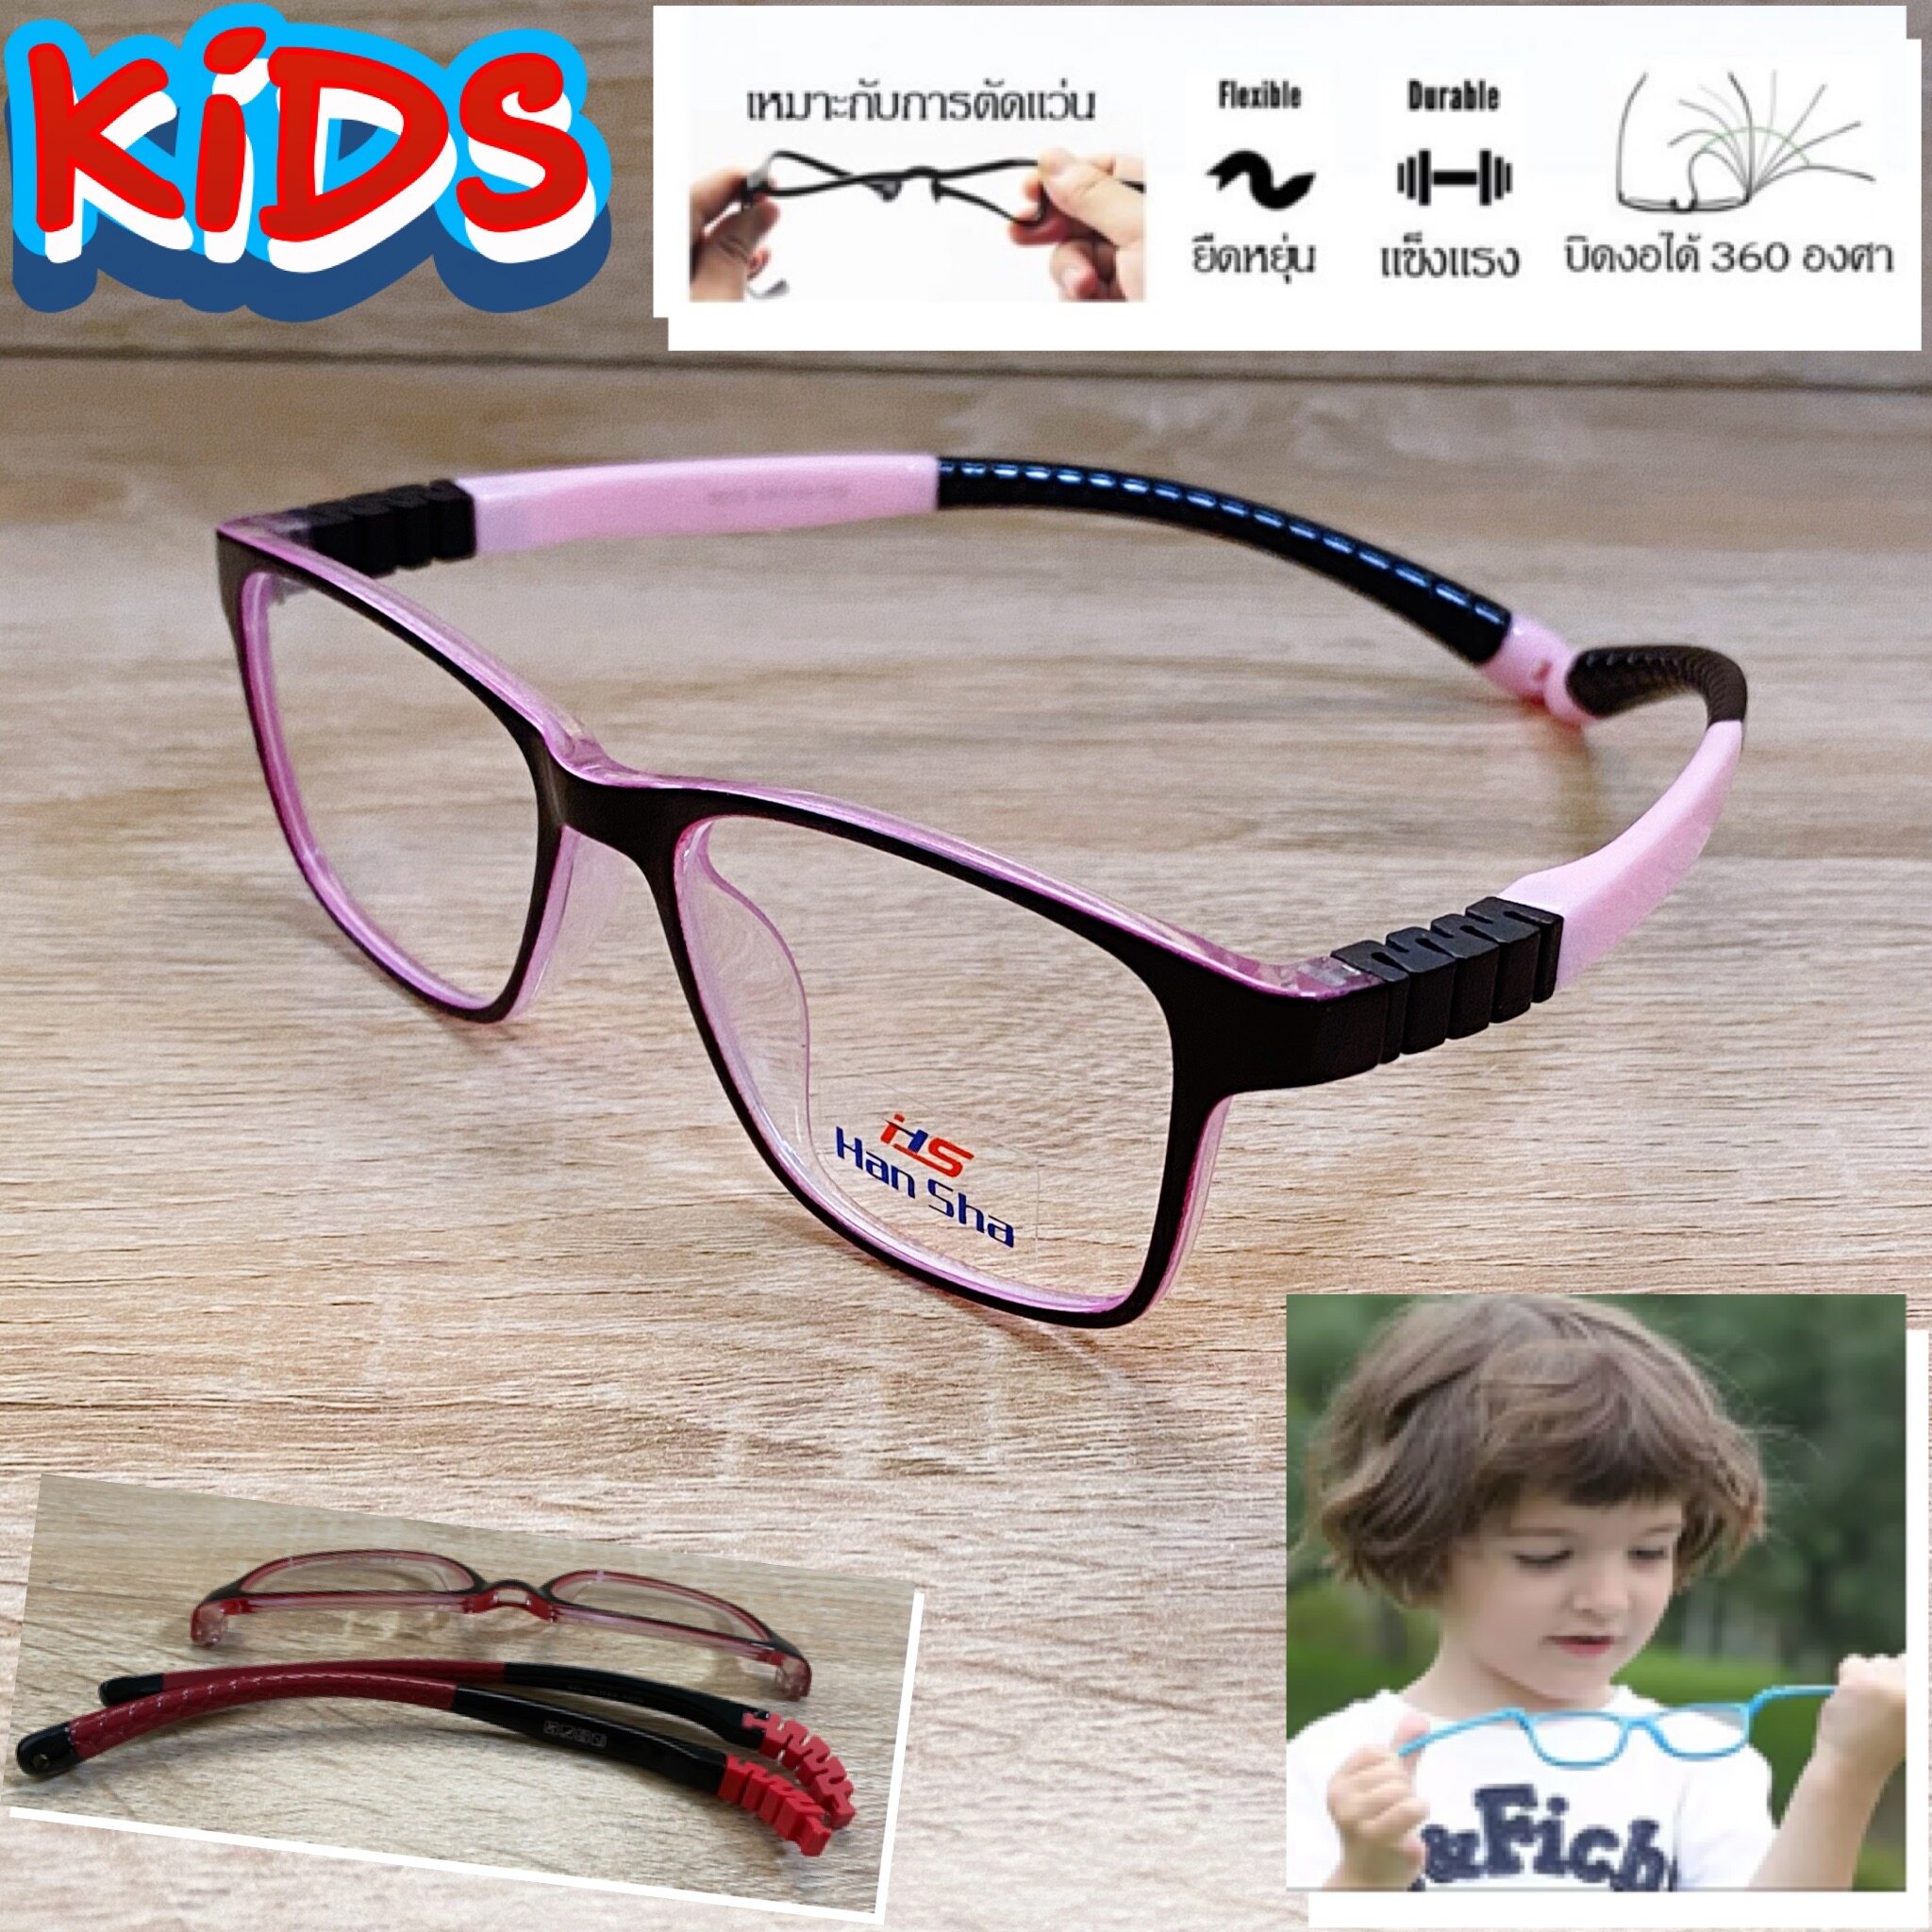 แว่นตาเด็ก กรอบแว่นตาเด็ก สำหรับตัดเลนส์ แว่นตา Han Sha รุ่น 5003 สีดำตัดชม ขาไม่ใช้น็อต ยืดหยุ่น ถอดขาเปลี่ยนได้ วัสดุ TR 90 เบา ไม่แตกหัก